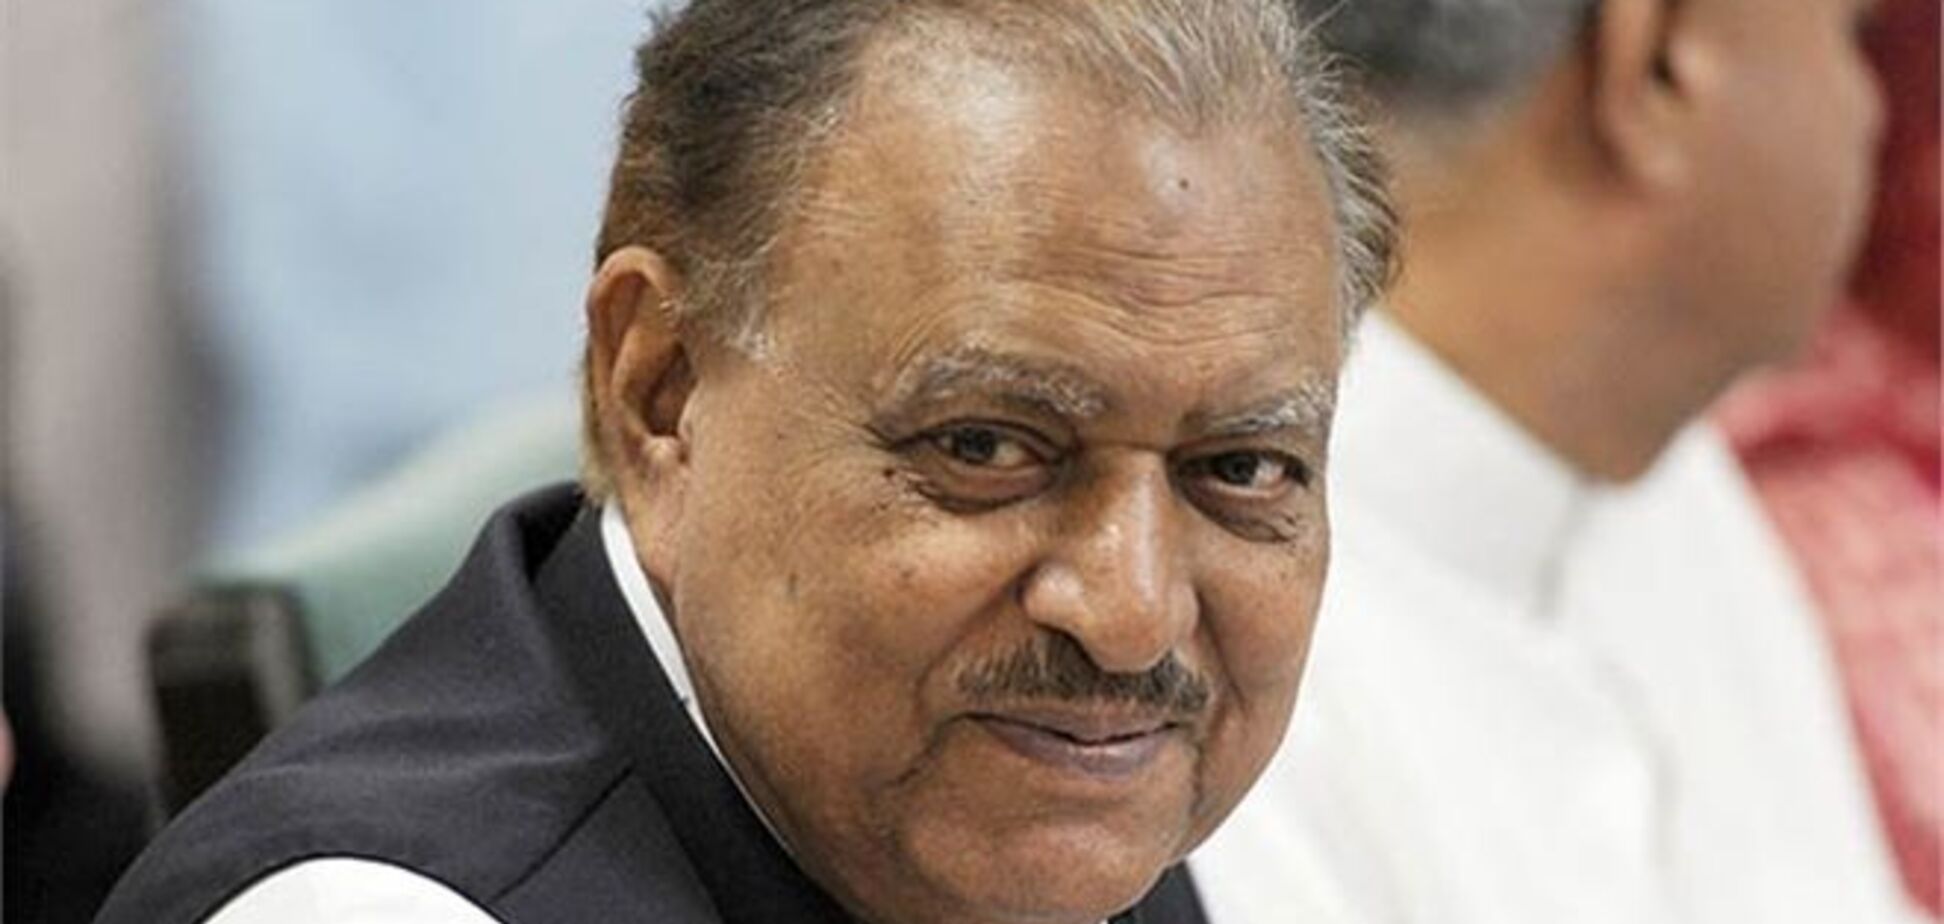 Президентом Пакистану обрано Мамнун Хуссейн